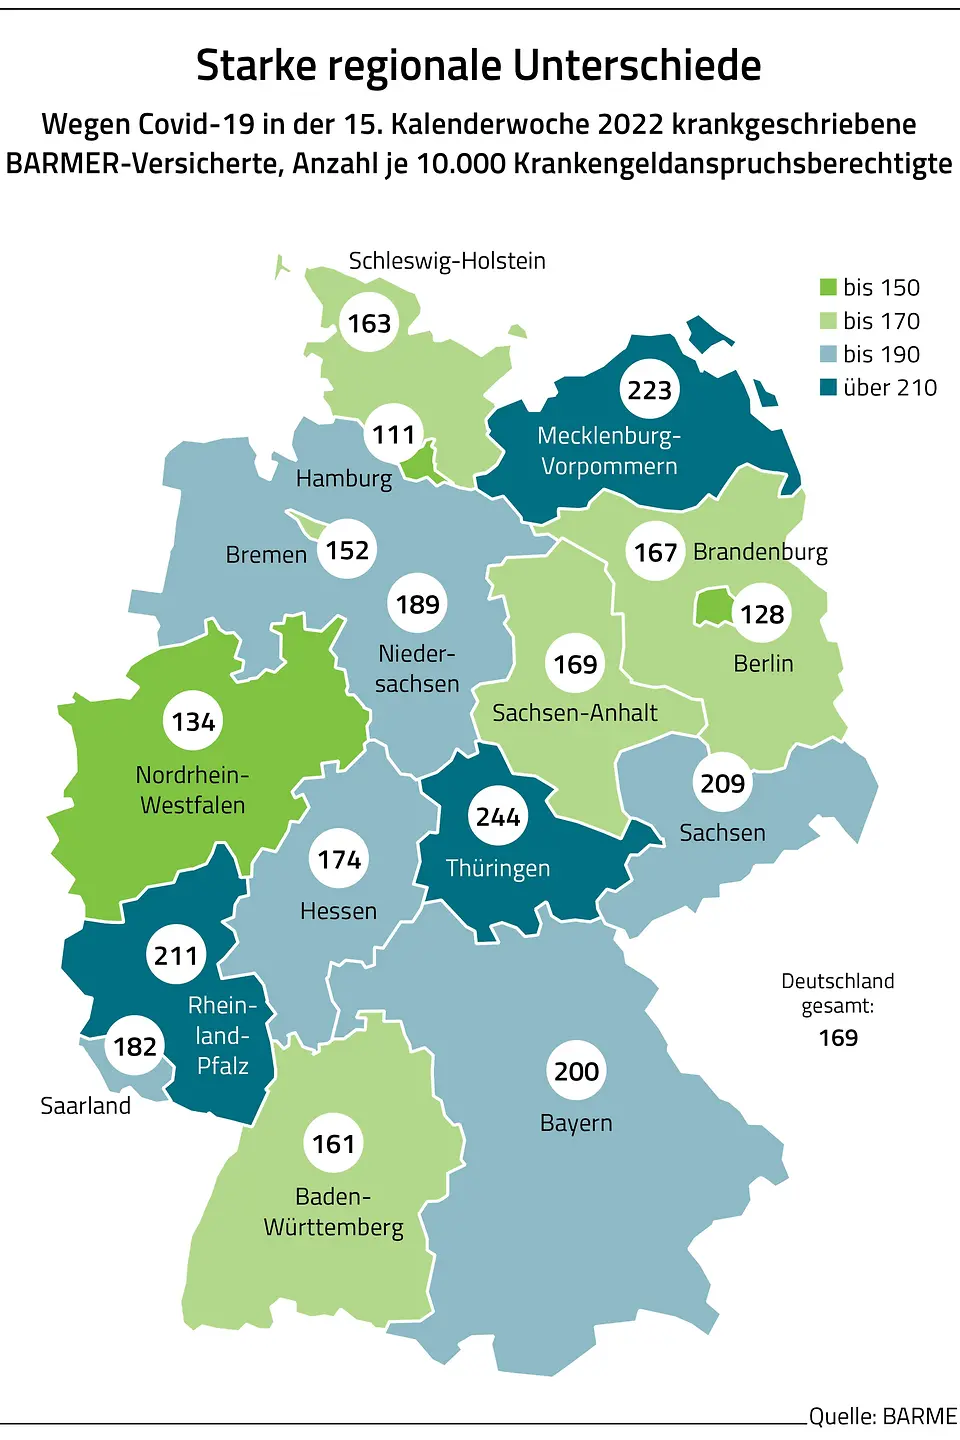 Die Grafik zeigt die starken regionalen Unterschiede in Deutschland bei den Corona-Krankschreibungen im Jahr 2022.